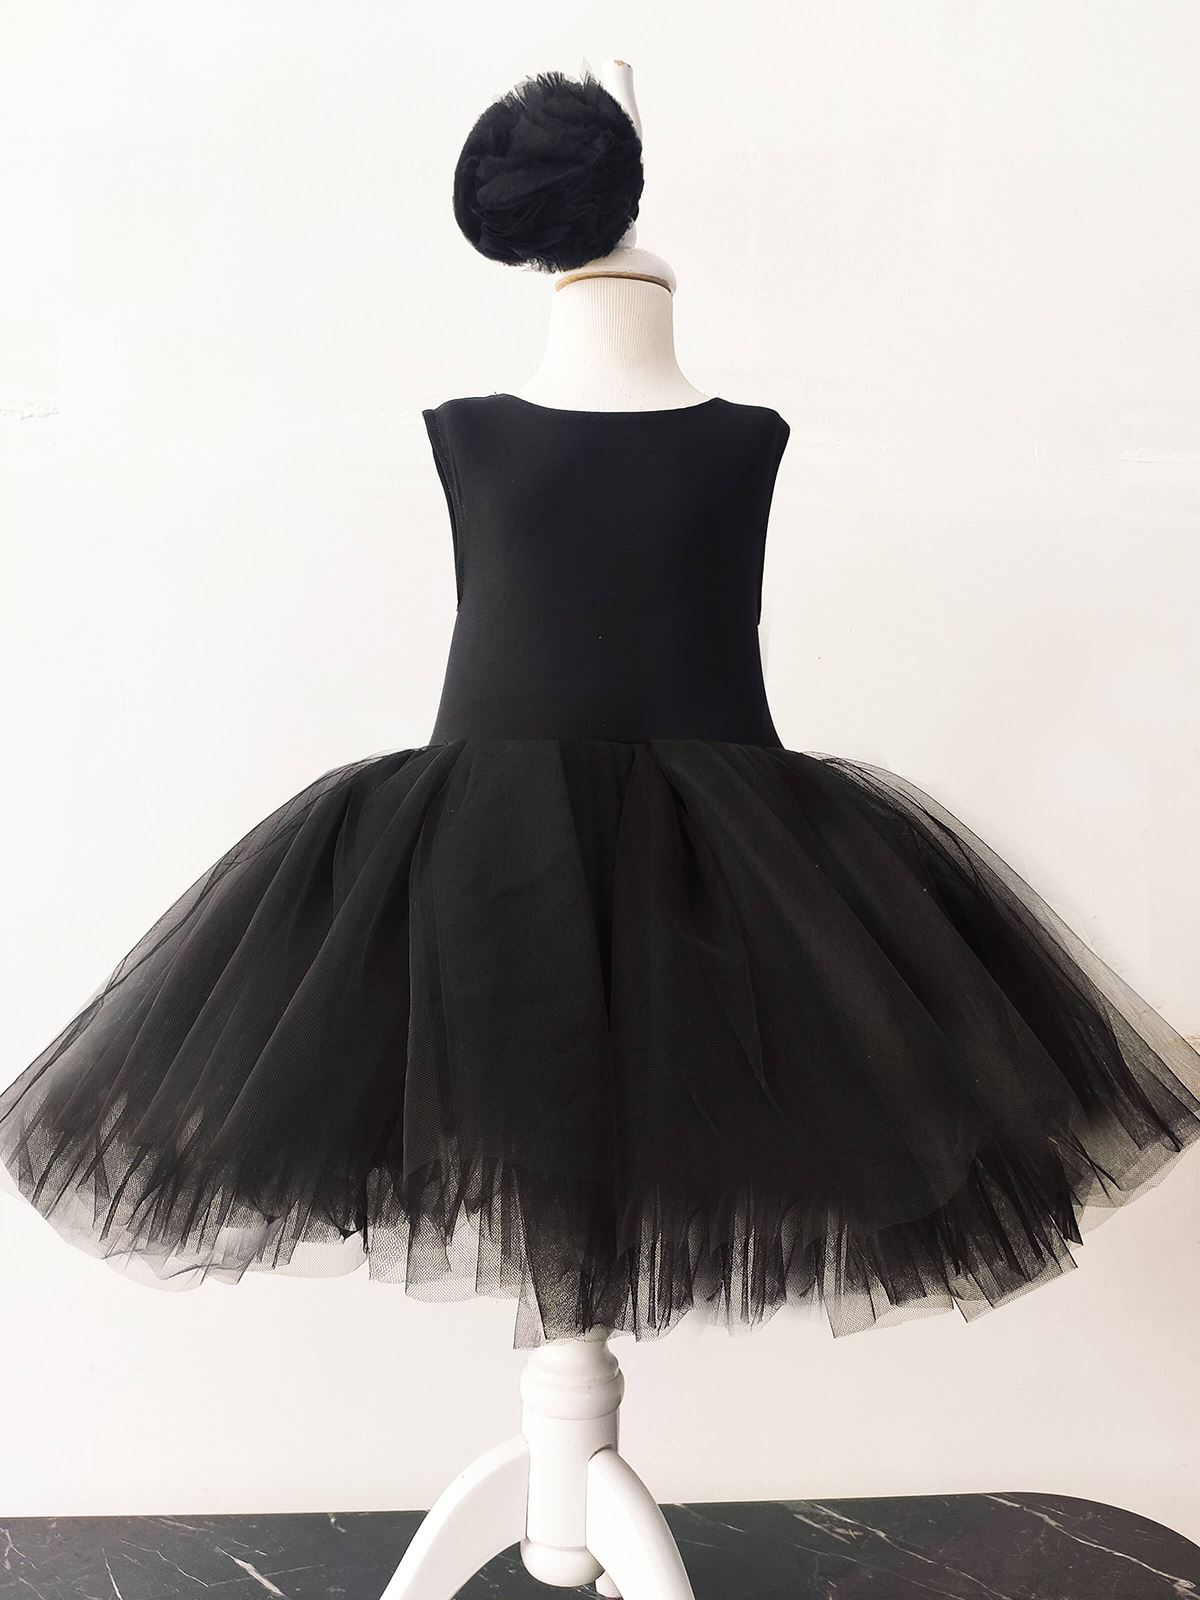 Shecco Babba Balerin Model Kız Çocuk Tütü Elbise, Pon Pon Bandana Takımı - Çocuk Abiye Elbise 1-5 Yaş Abiye Siyah